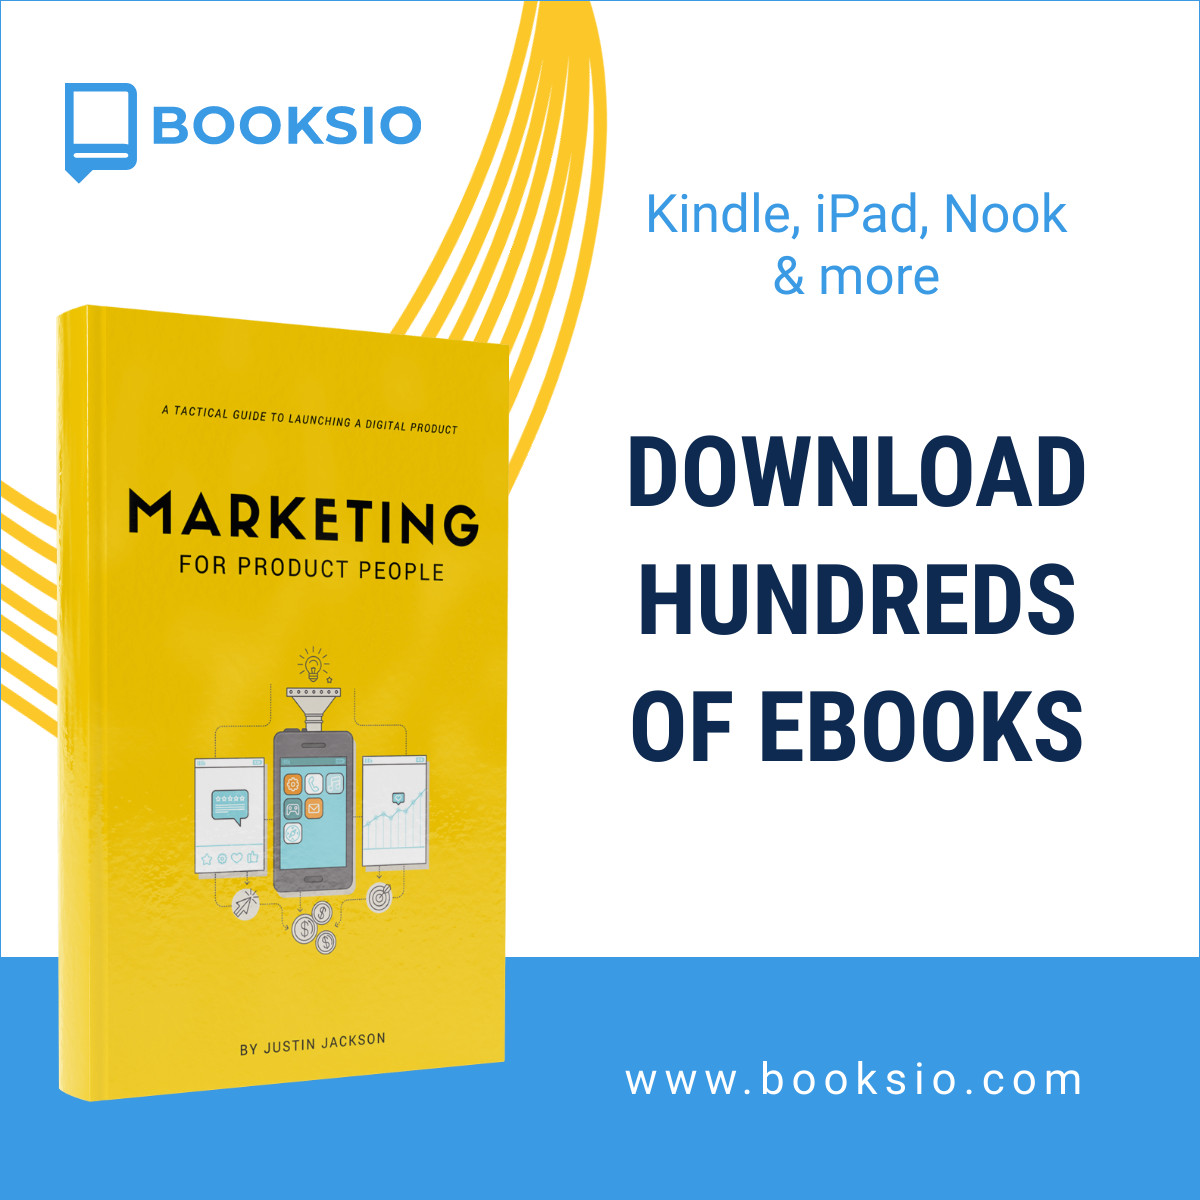 Download Hundreds of Ebooks